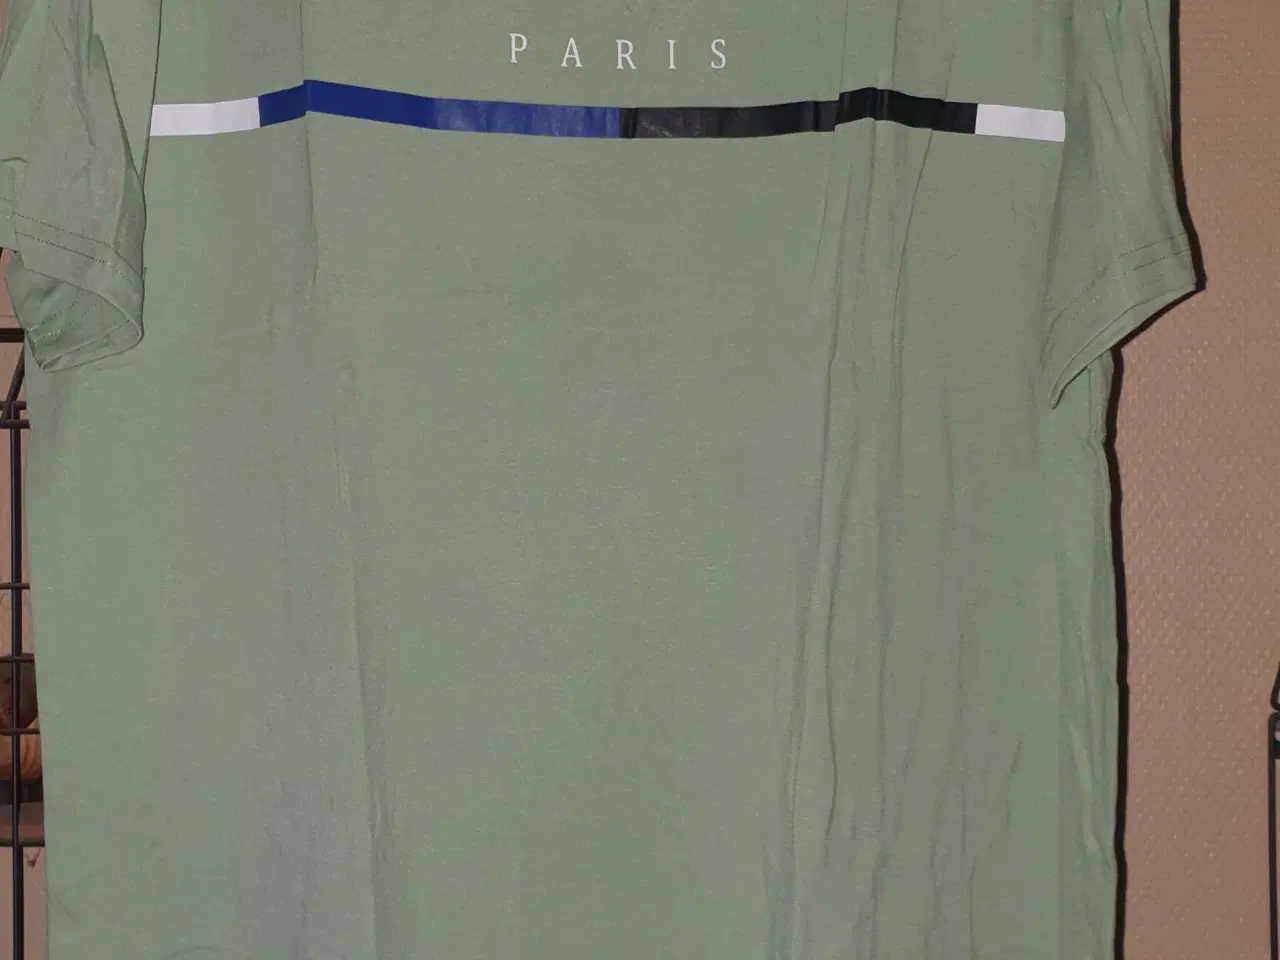 Billede 1 - Grøn T-shirt med Paris tryk på brystet